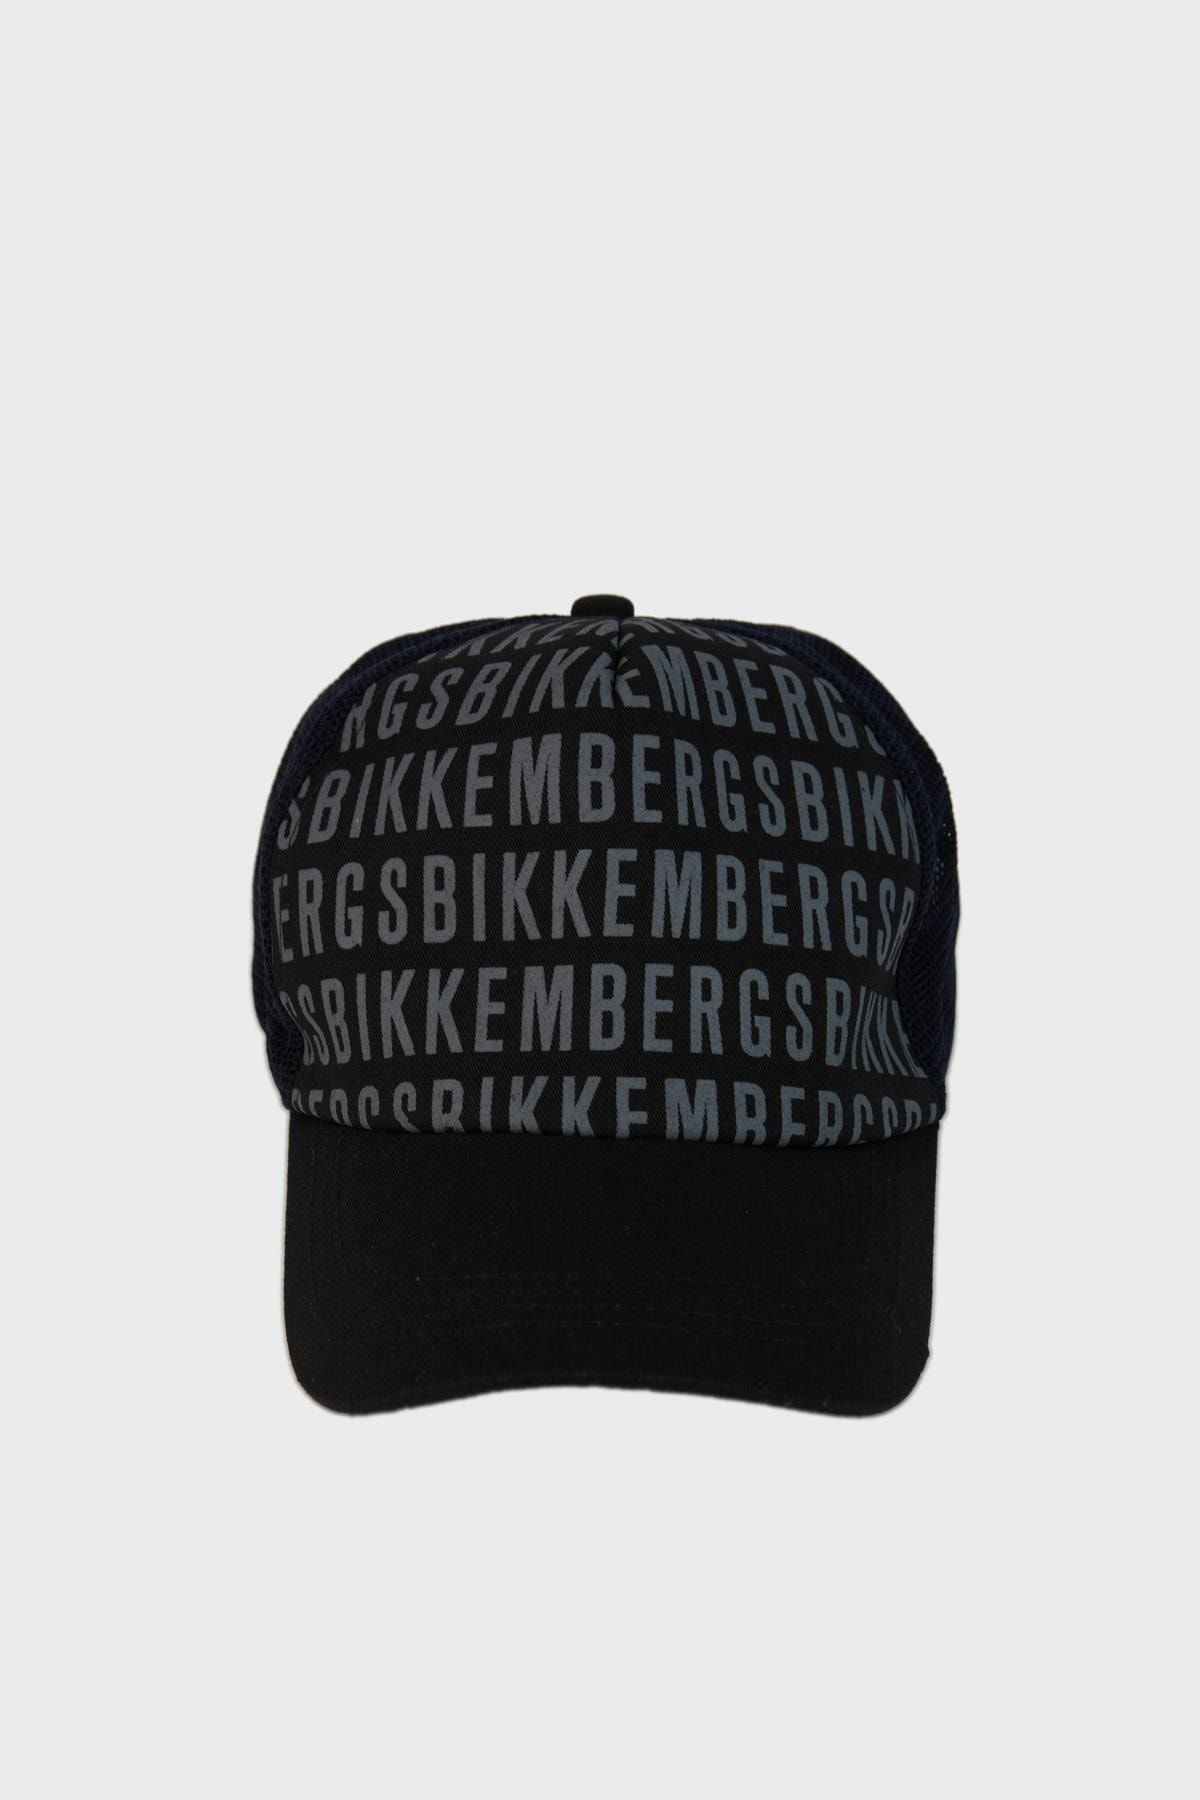 Bikkembergs Erkek Çocuk Siyah Şapka 23ss1bk1639